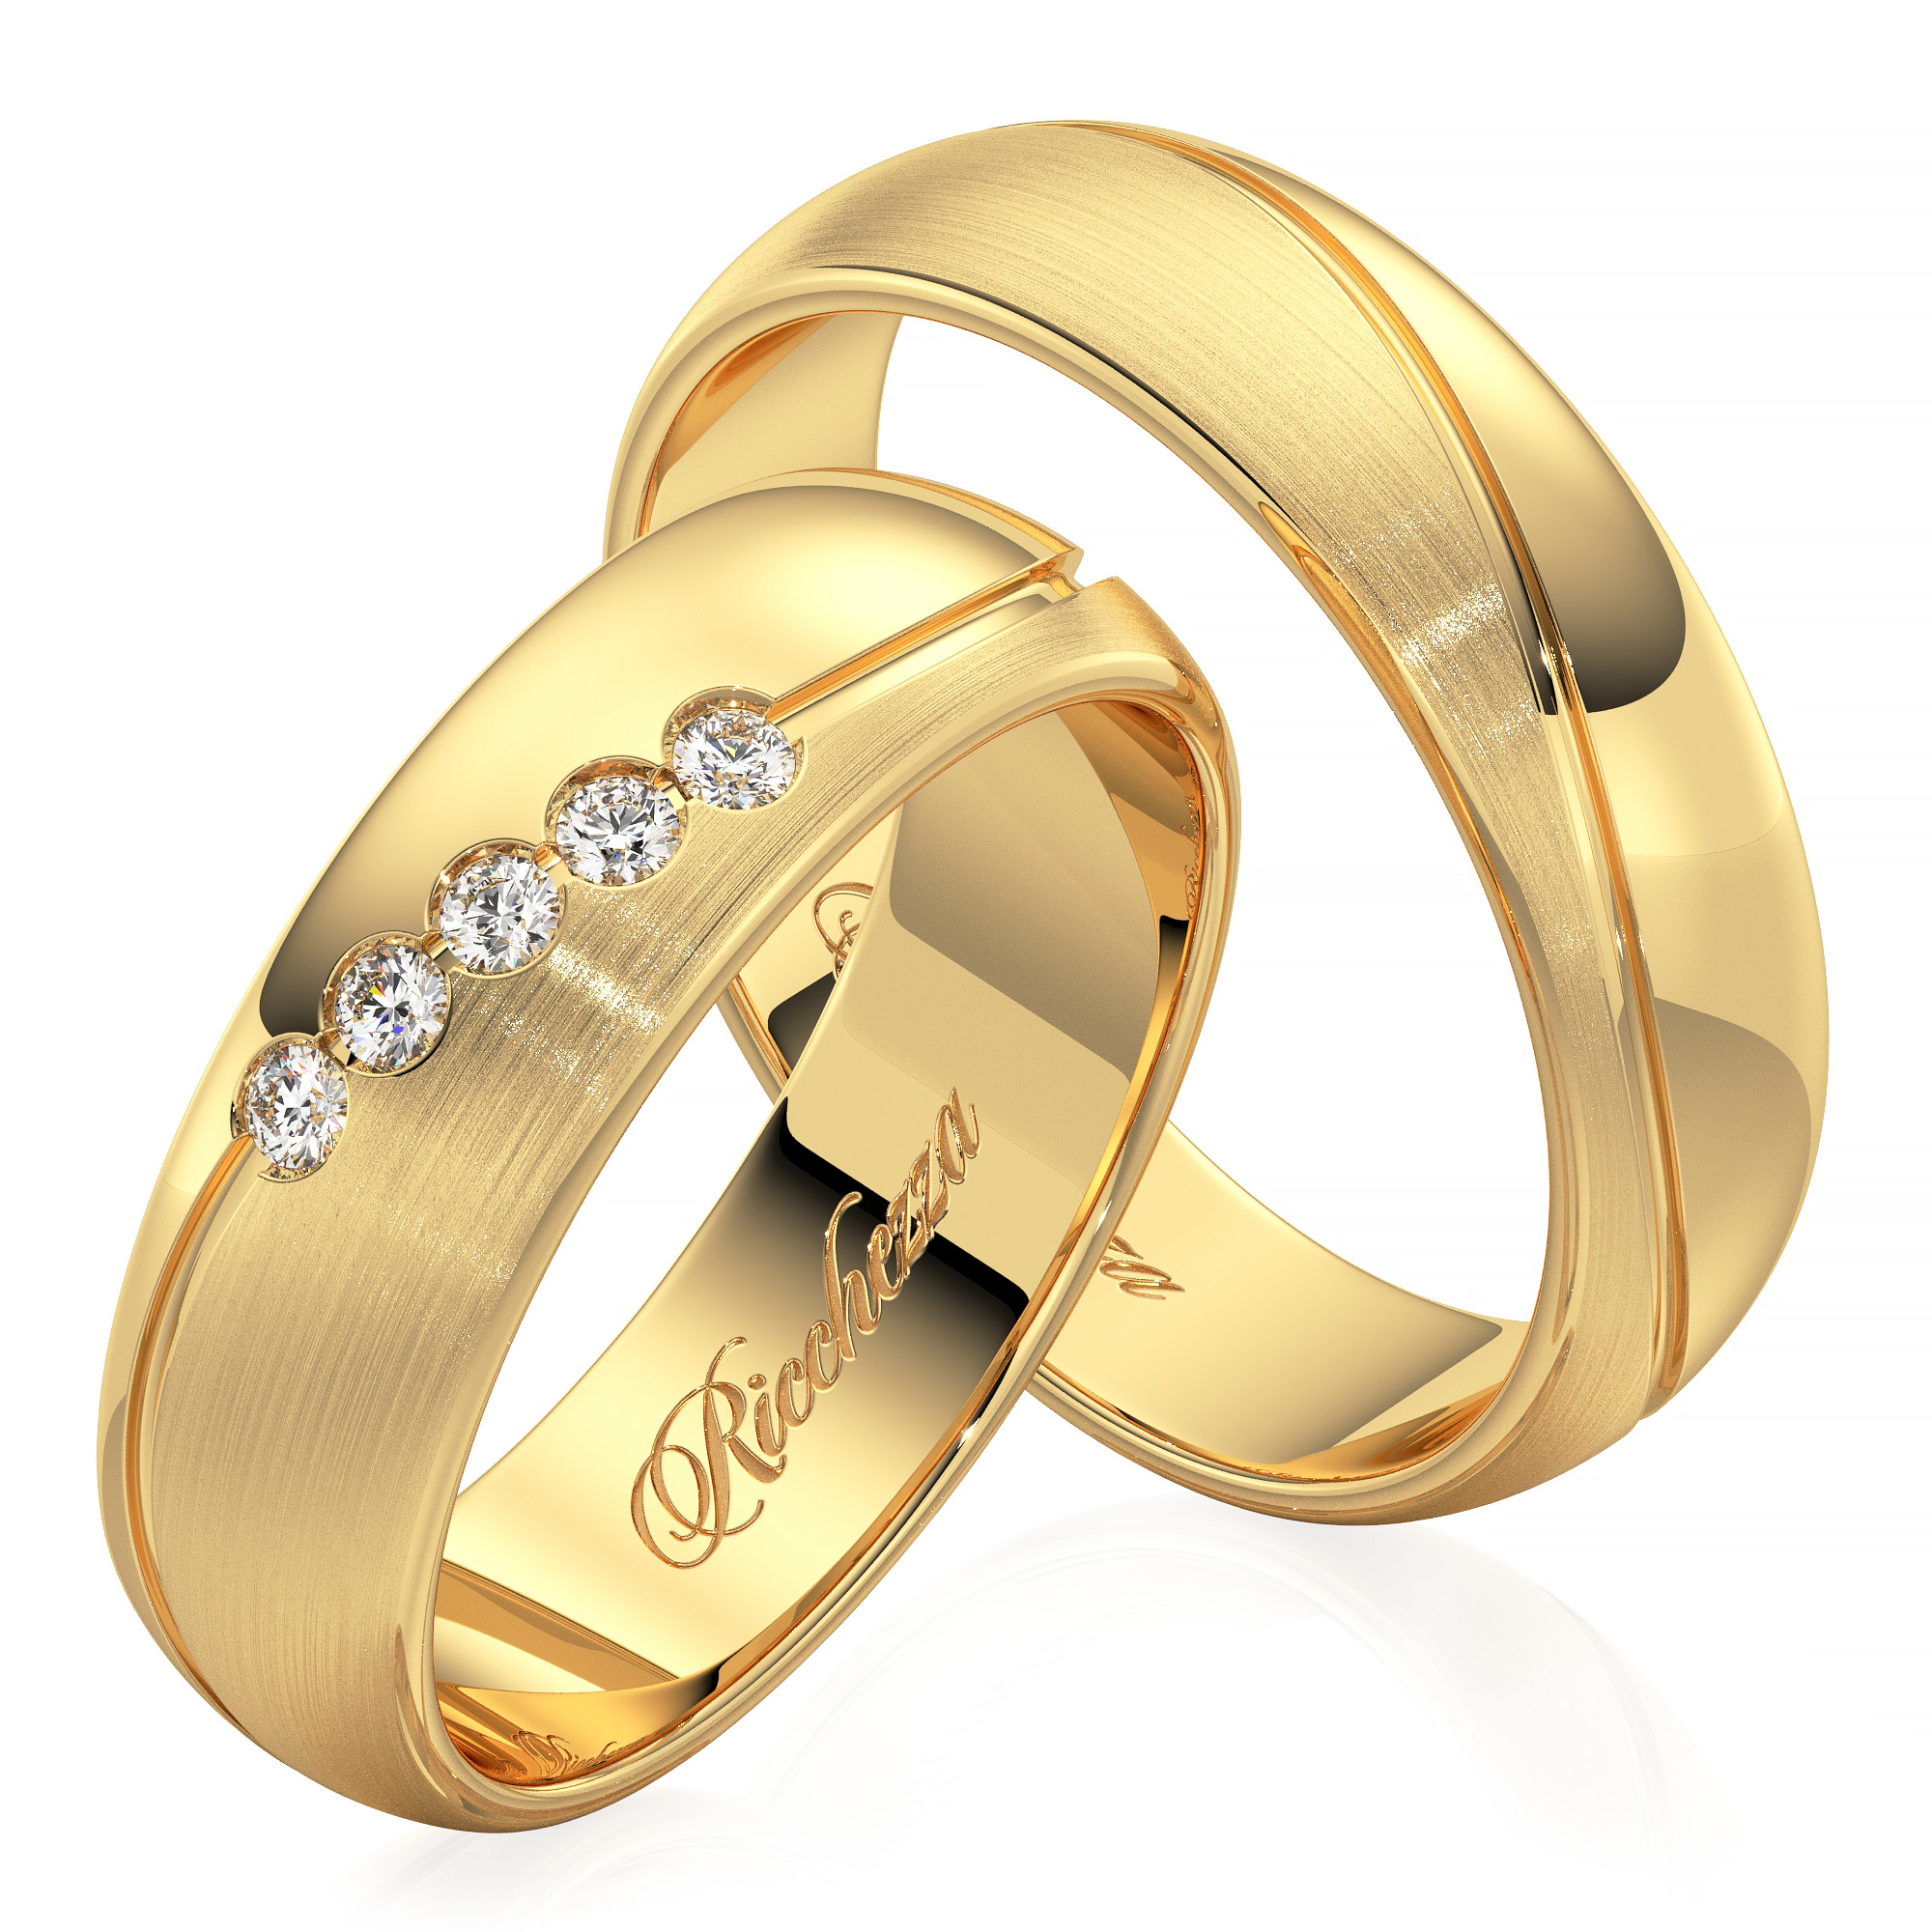 Обручальные кольца золотые на свадьбу. Обручальные кольца парные 585. Обручальные кольца золото 585. 585 Золотой обручальные кольца. Венчальные кольца 585.